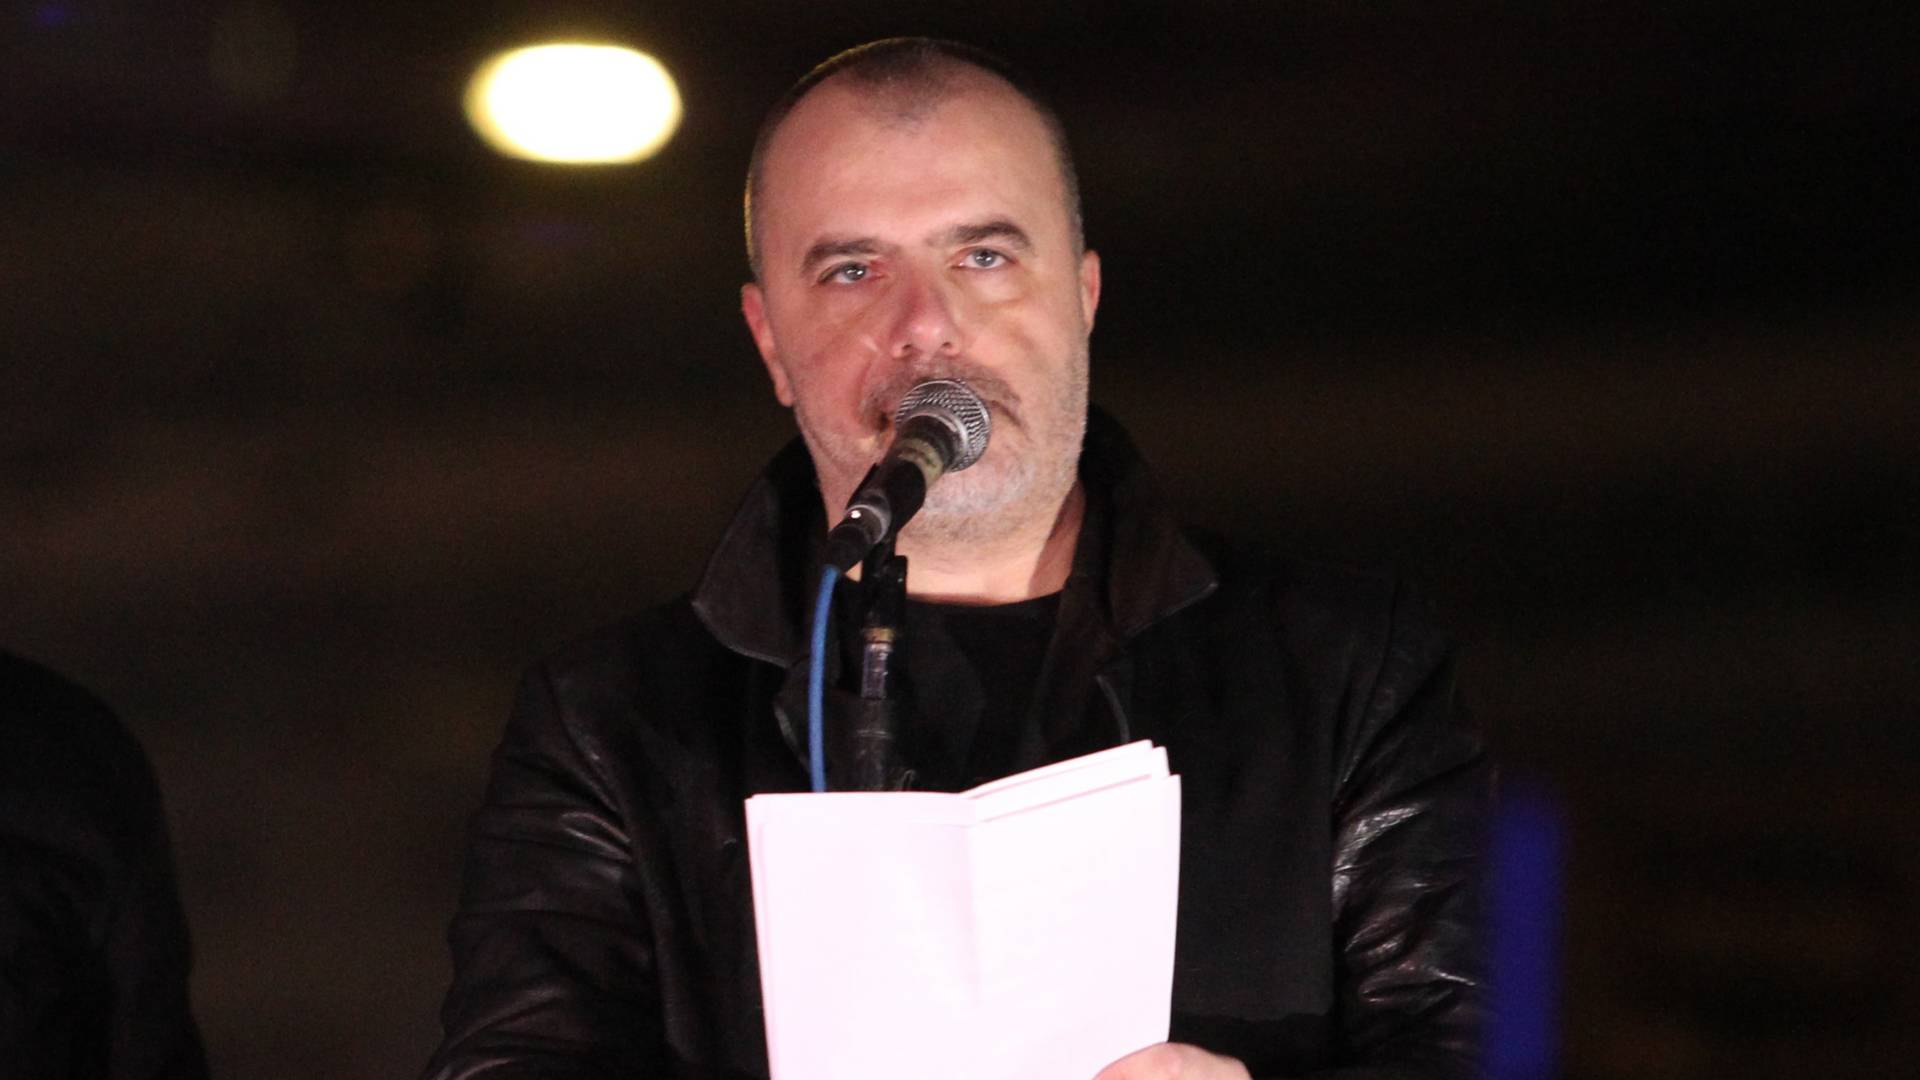 Govor Nikole Koja na protestu u Mladenovcu: "Nećemo više o njemu"